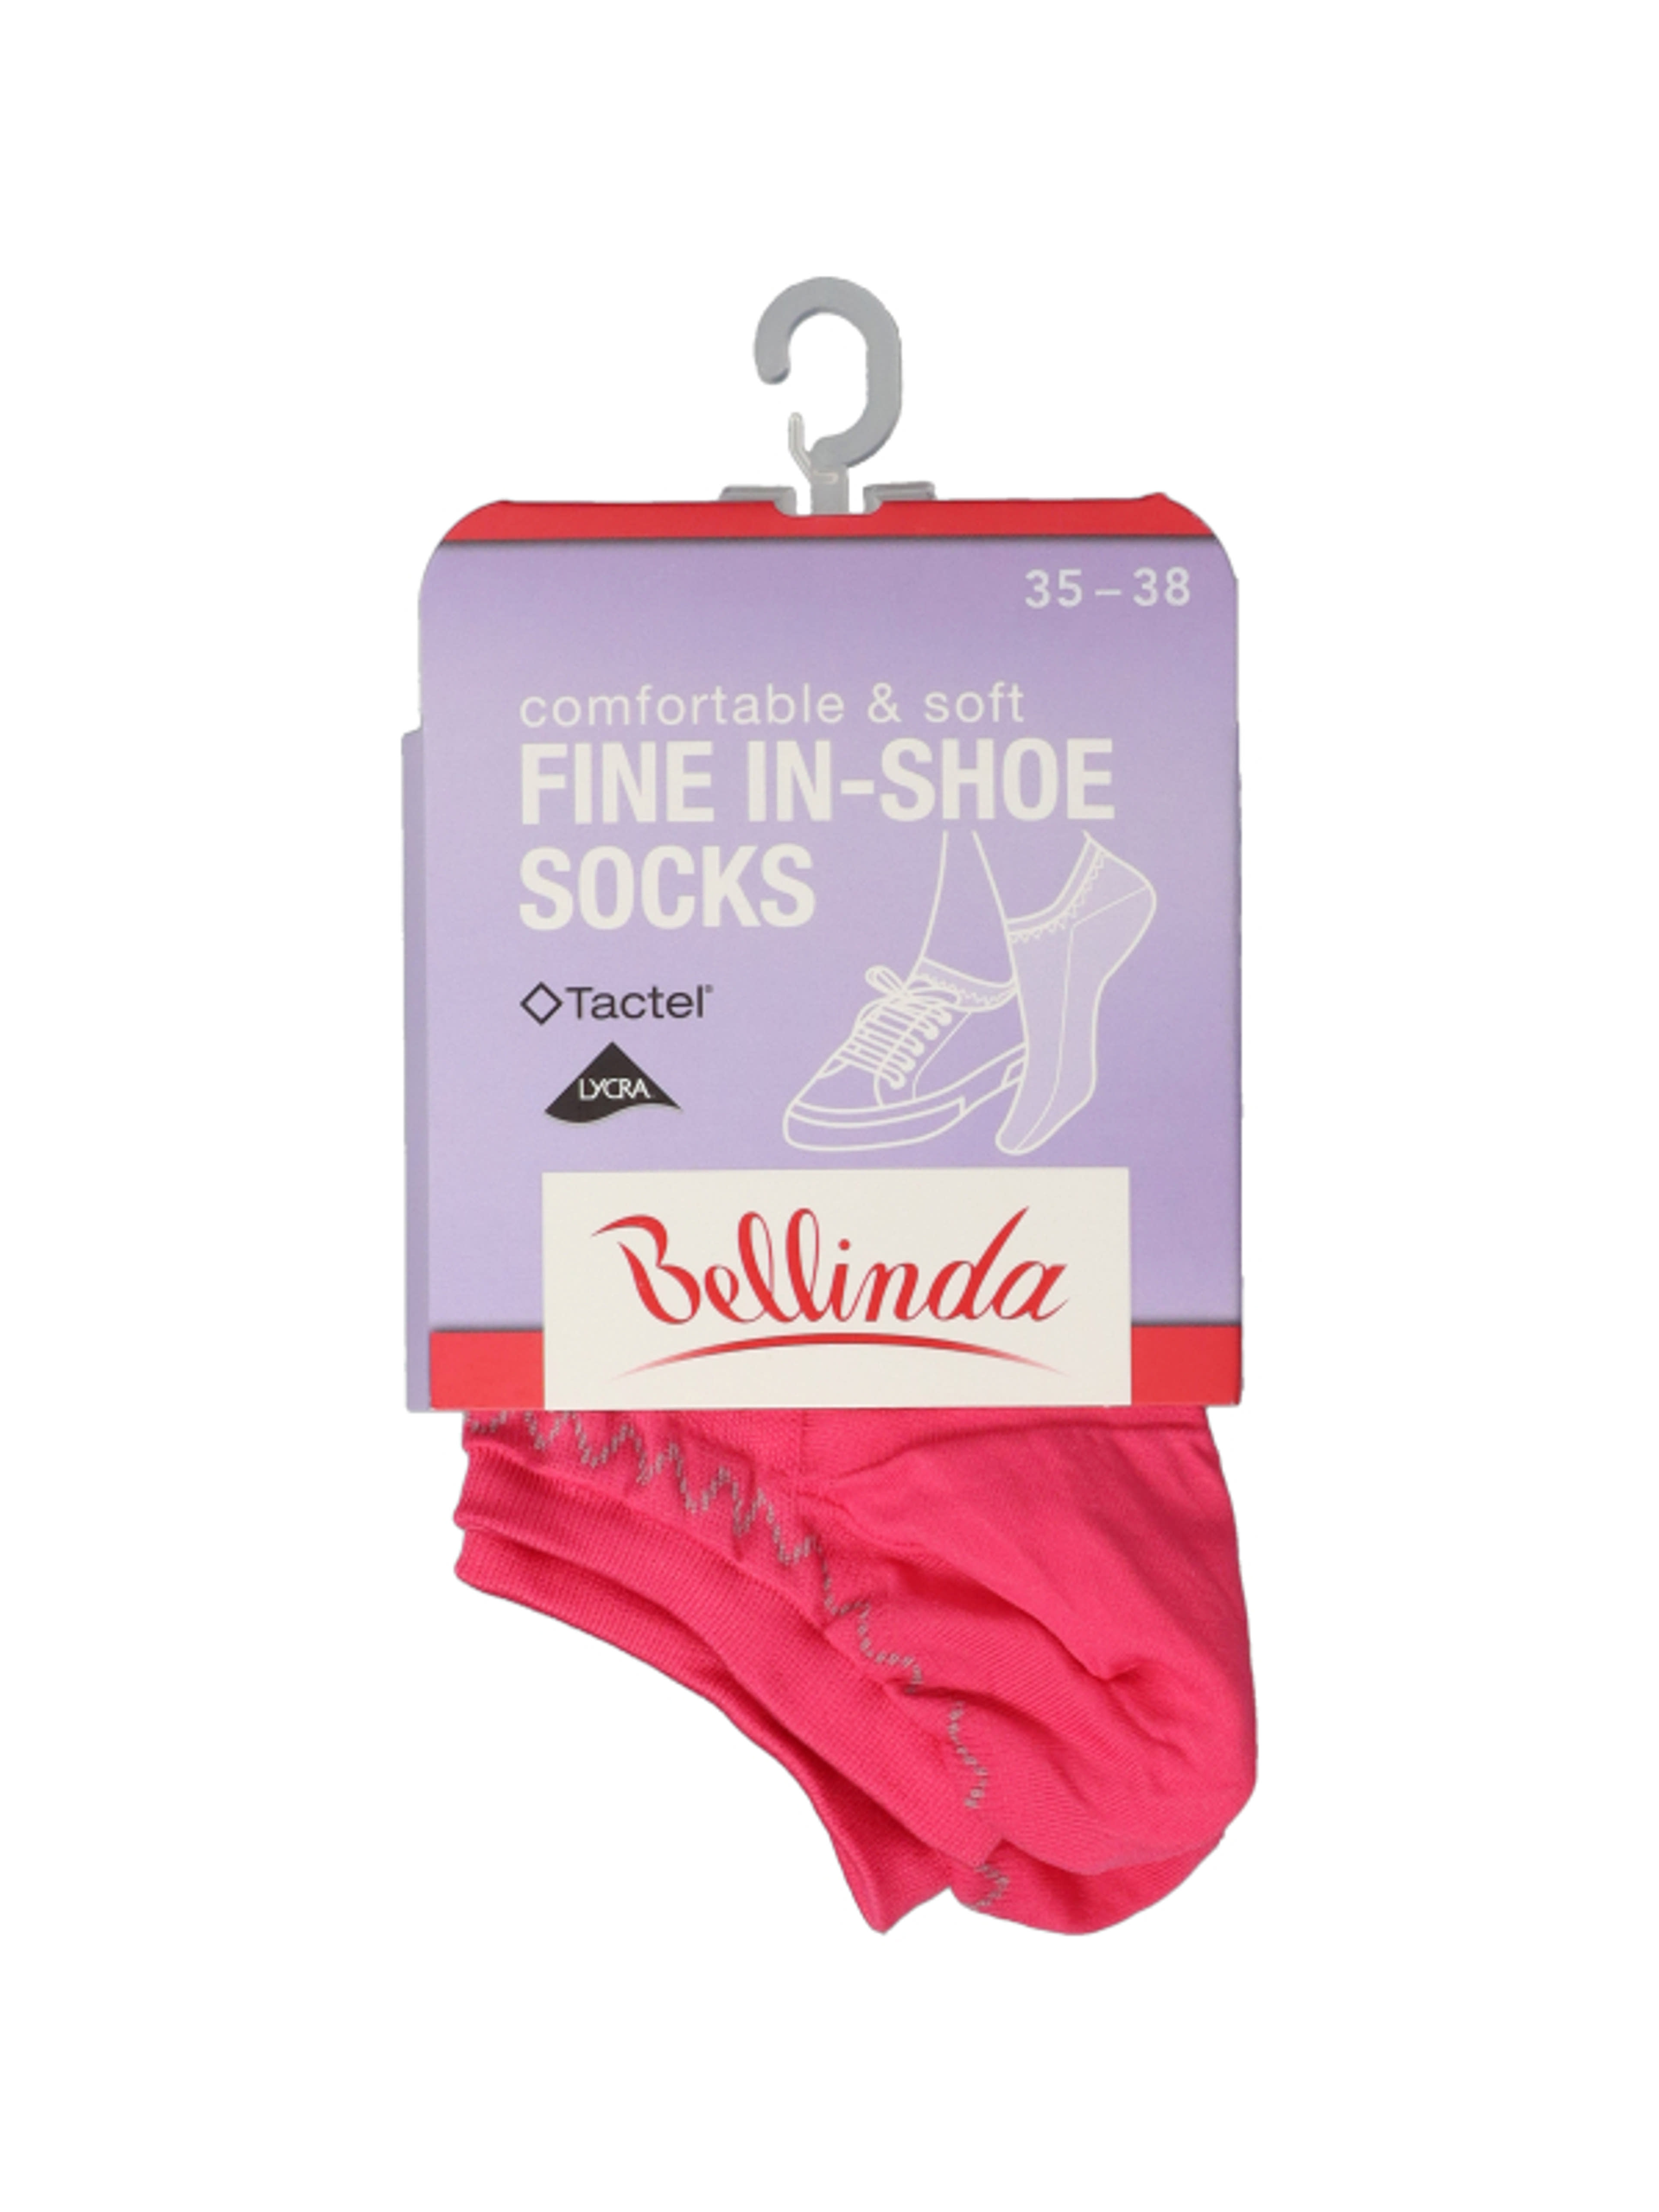 Bellinda Fine In-Shoe női zokni, 35-38 - 1 pár